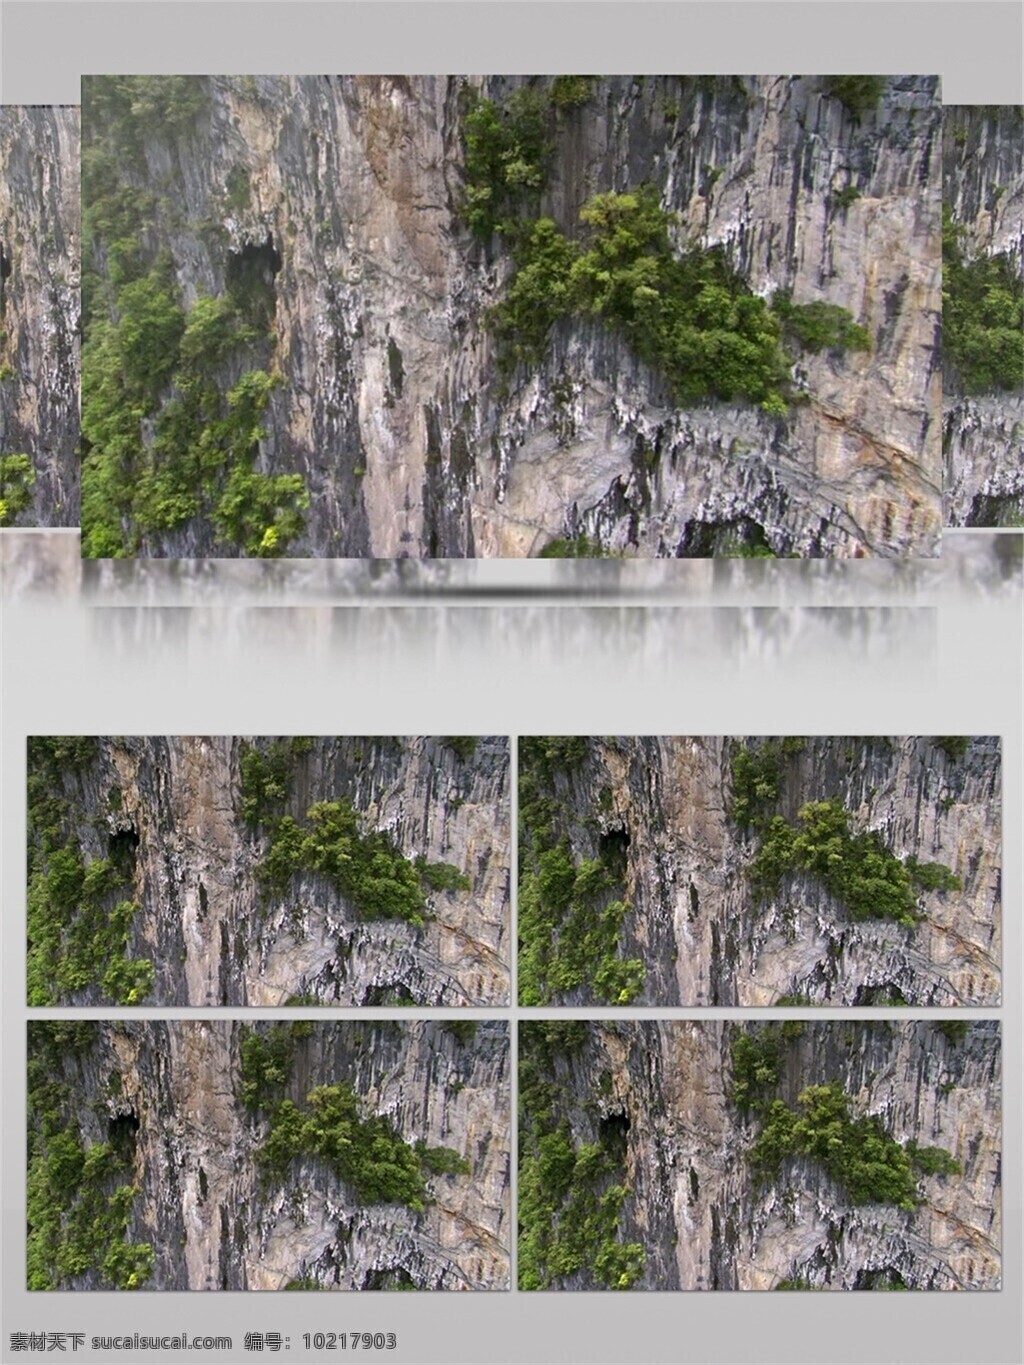 悬崖峭壁 视频 音效 植物 风景 旅行 旅游 绿色 危险 高山 树木 风光 溪流 视频素材 视频音效